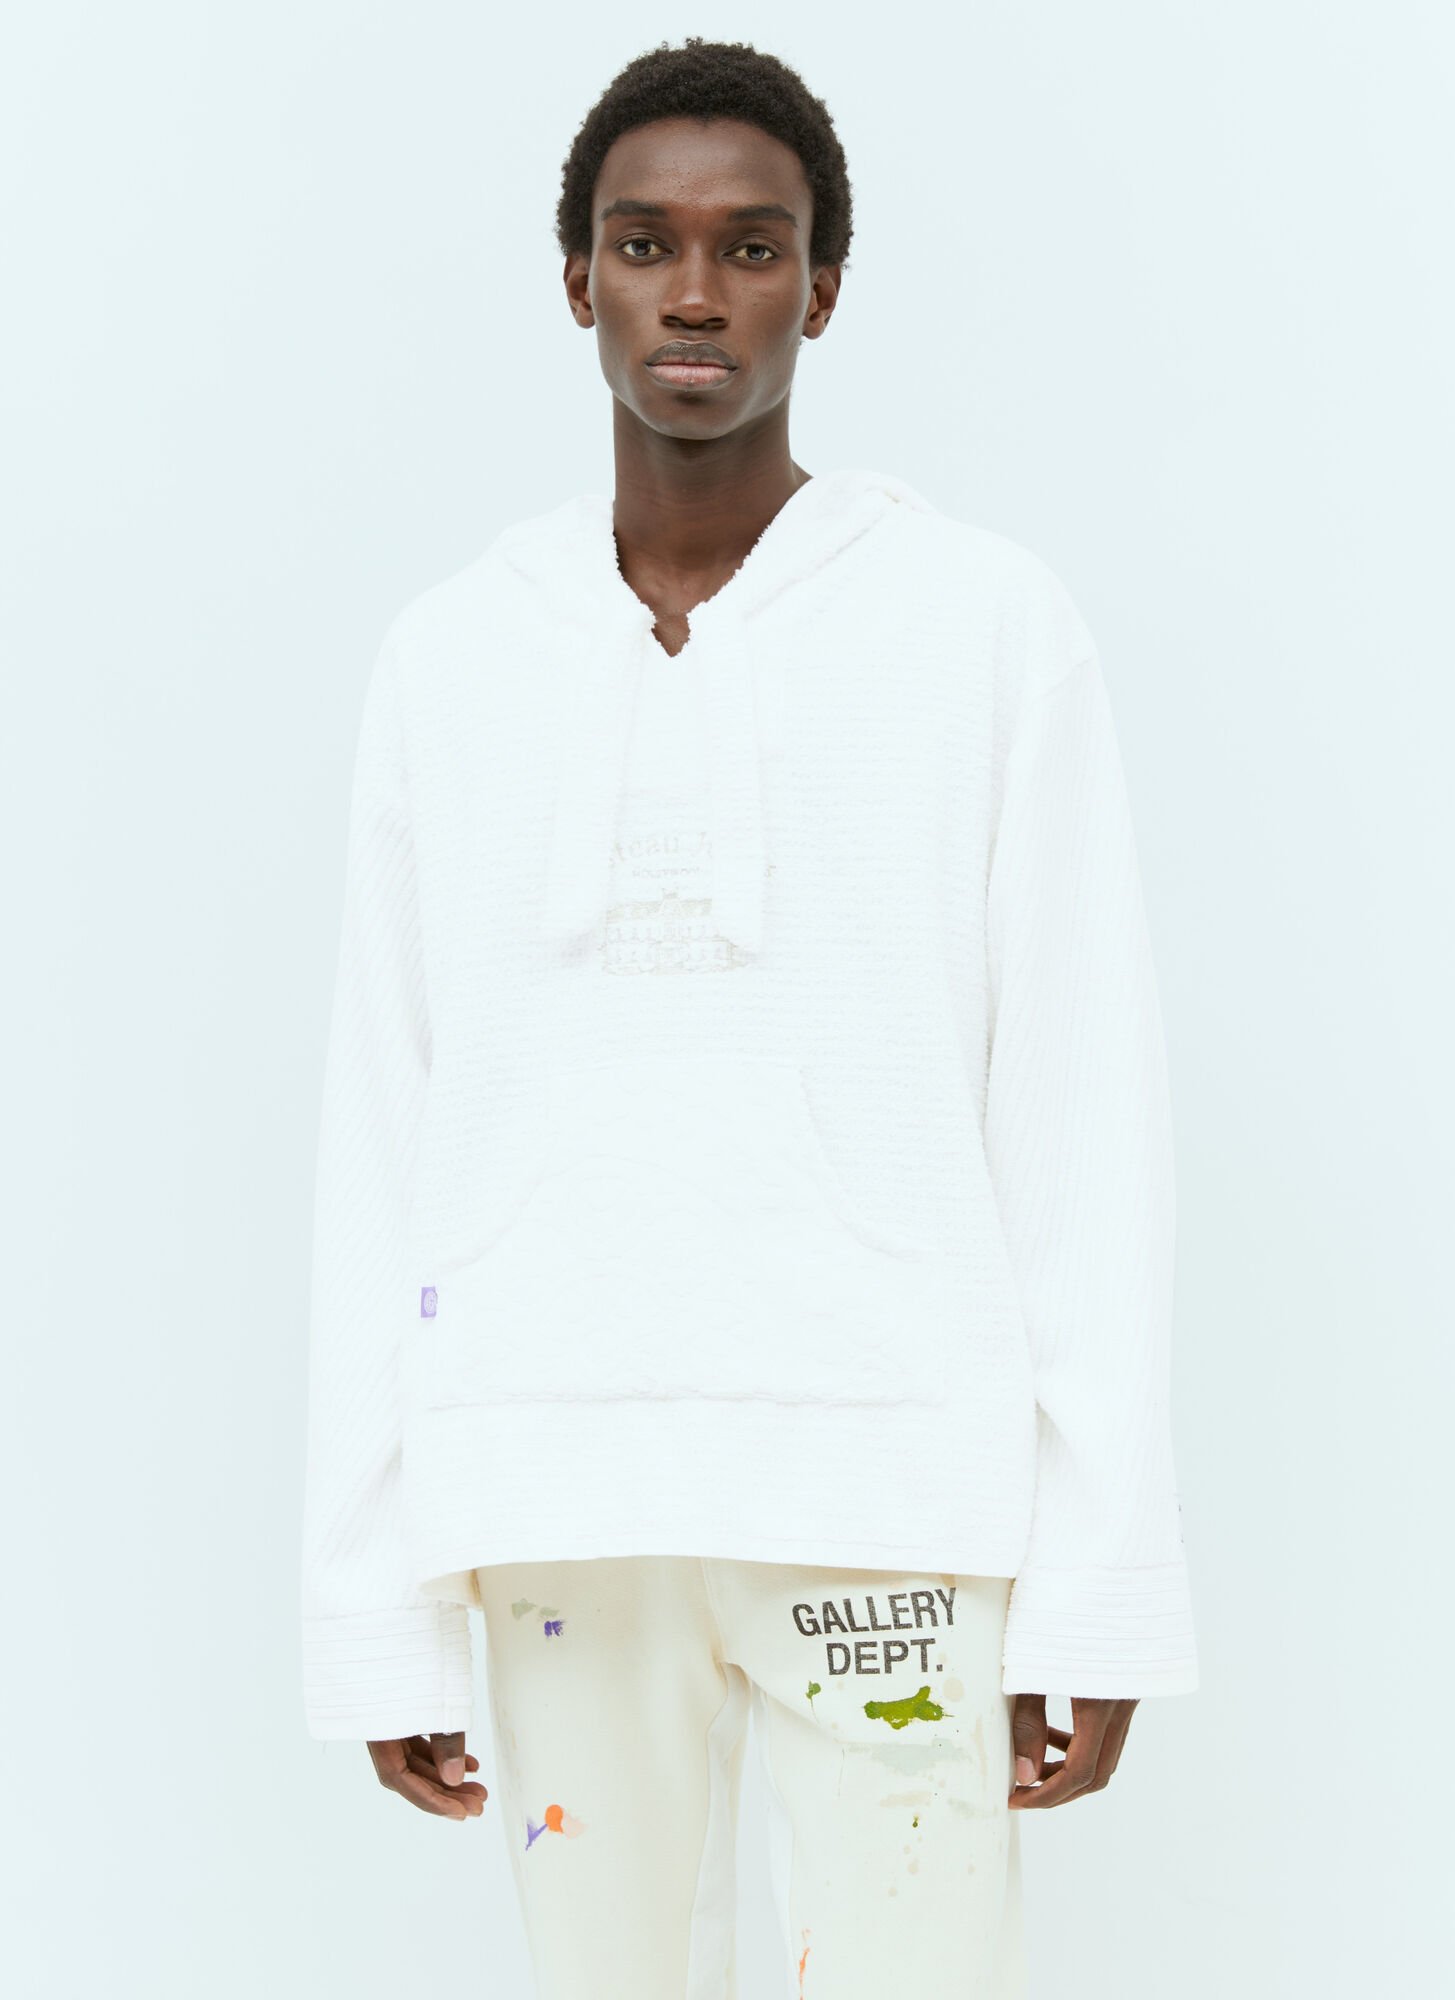 Gallery Dept. Beach Baja Hooded Sweatshirt In White